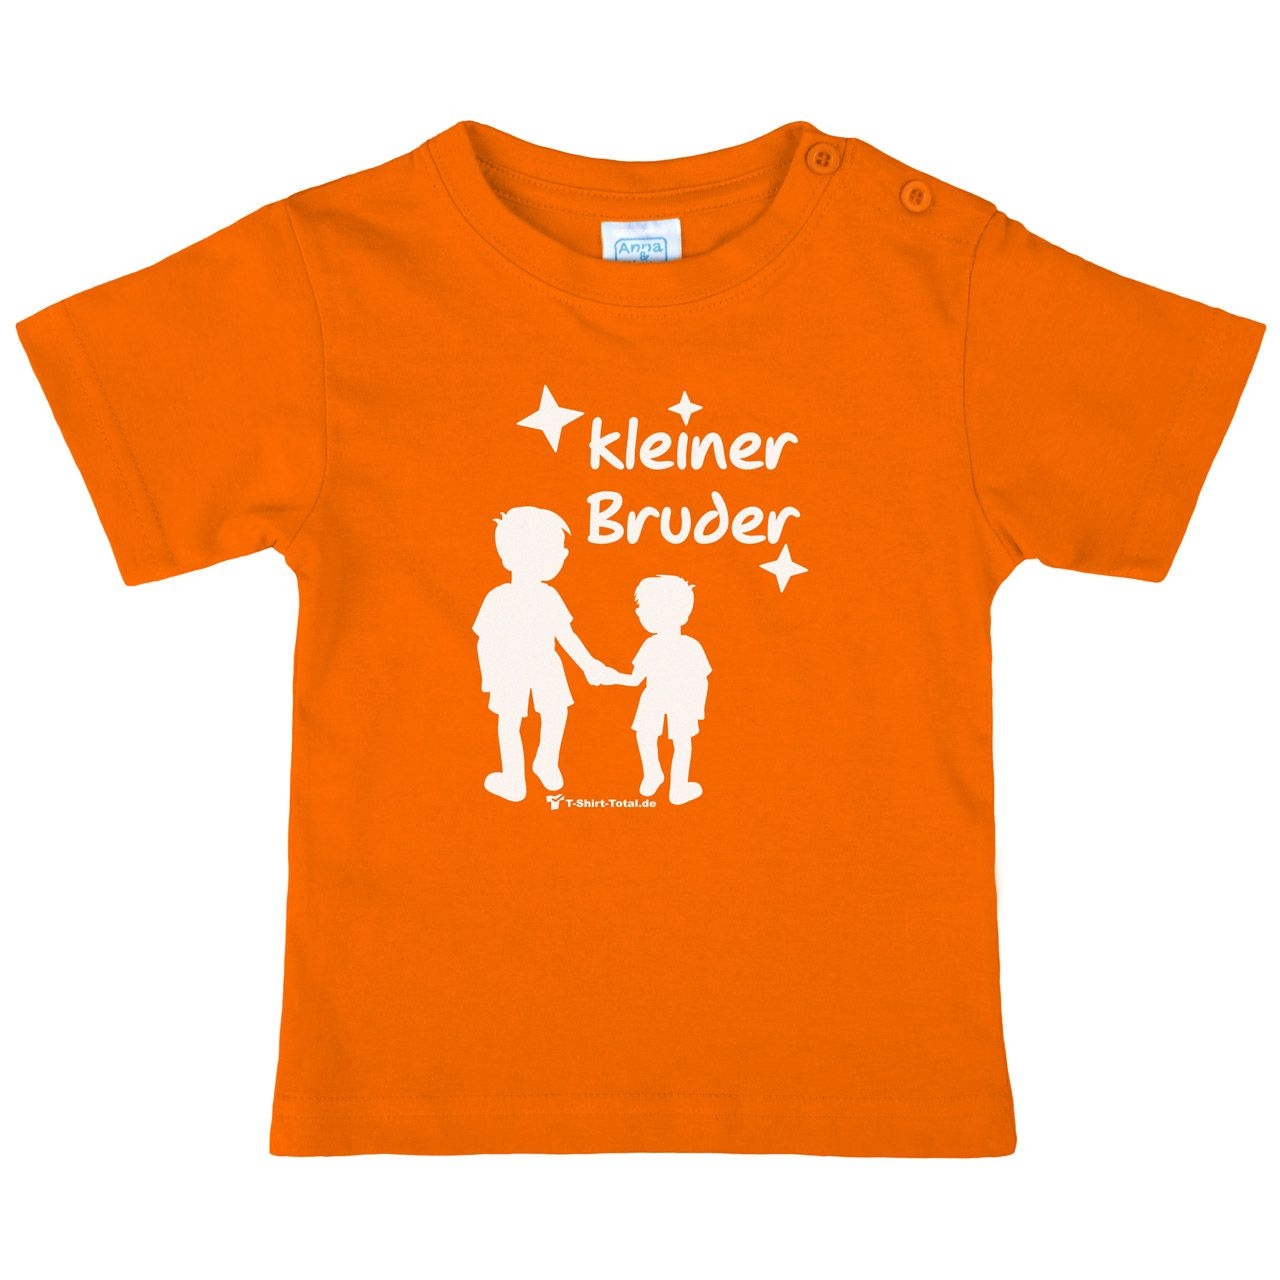 Kleiner Bruder JJ Kinder T-Shirt orange 68 / 74